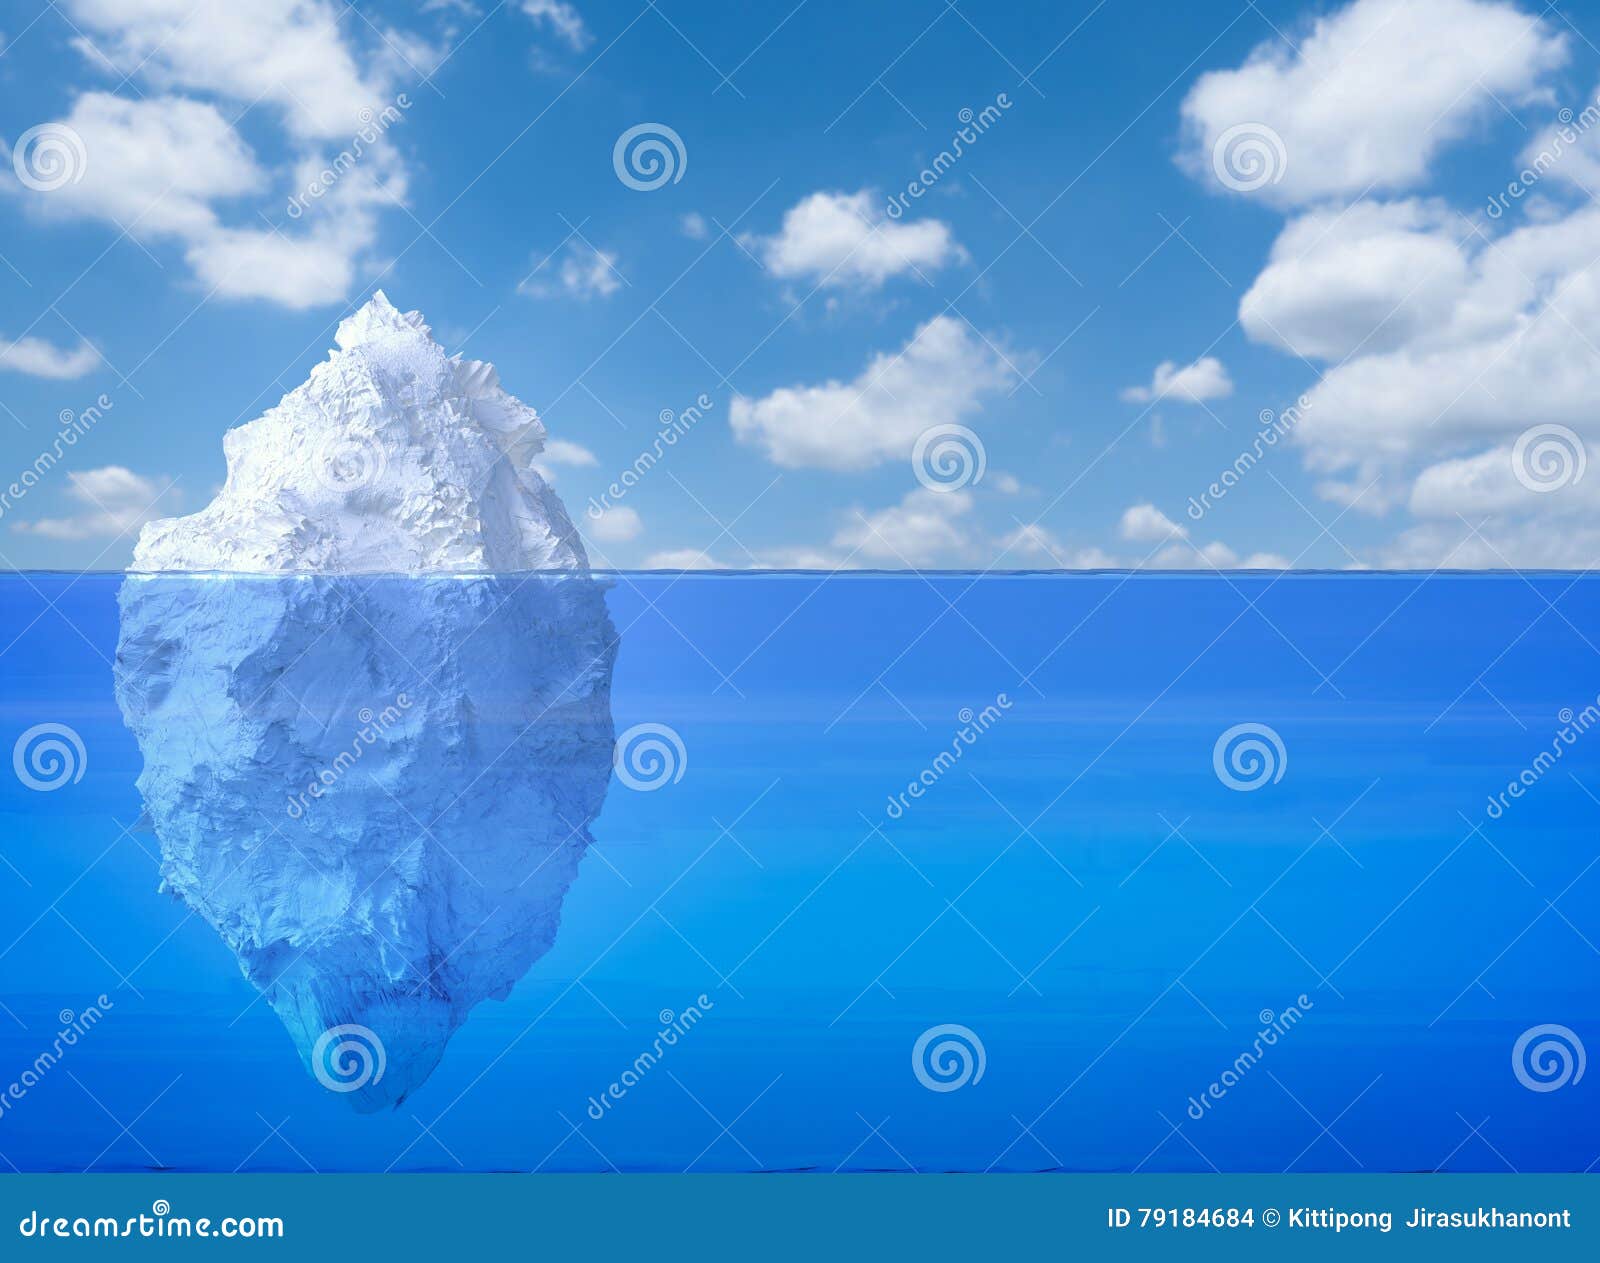 iceberg floating